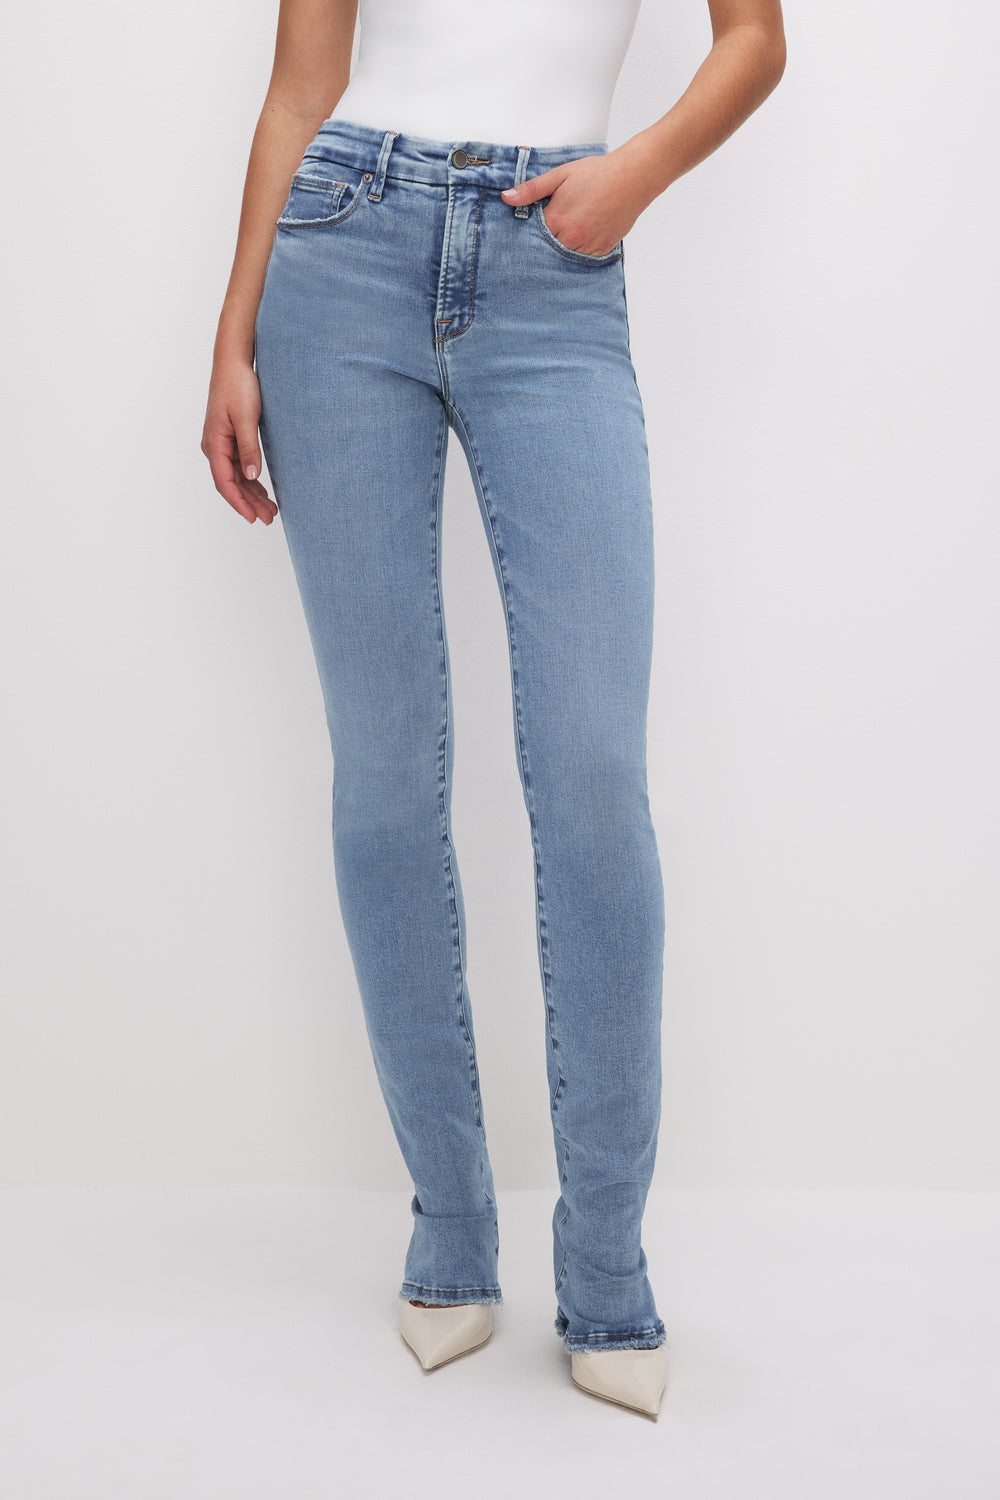 Women's Legs Jeans - GOOD AMERICAN